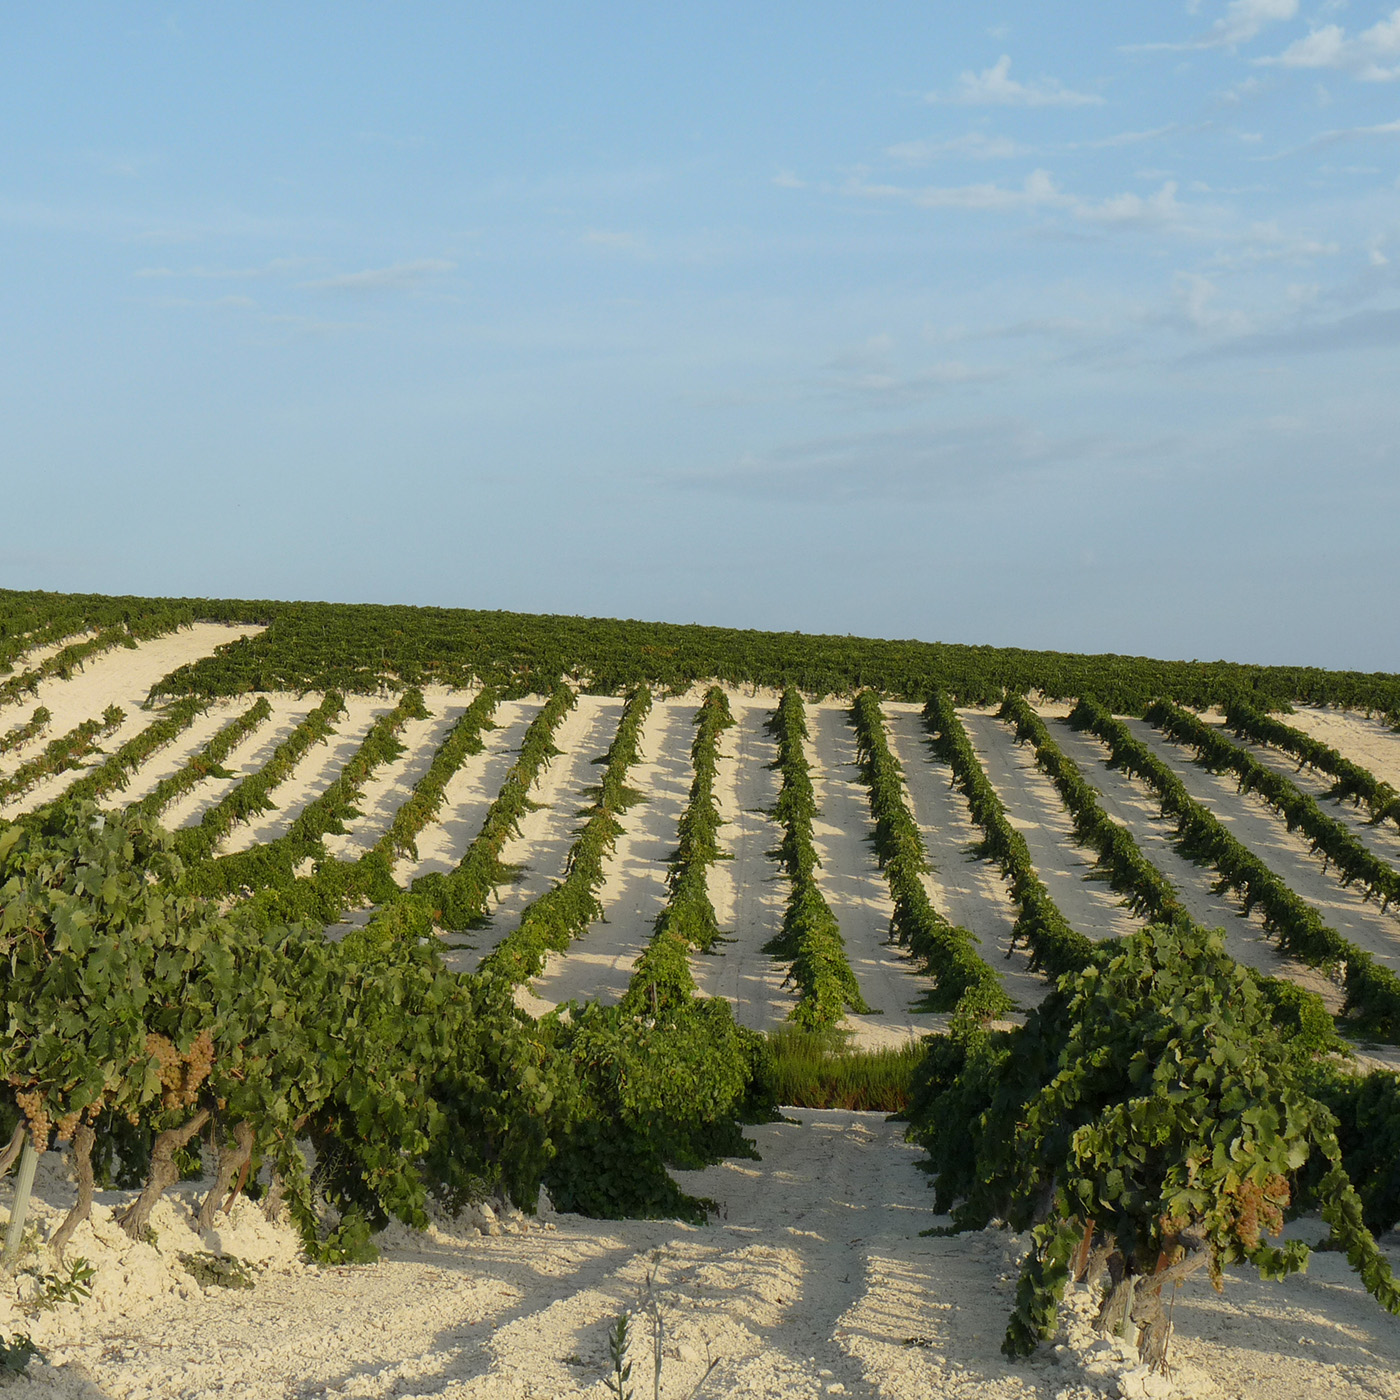 4x4 route through the vineyards of the Jerez area 0 - Rutasiete